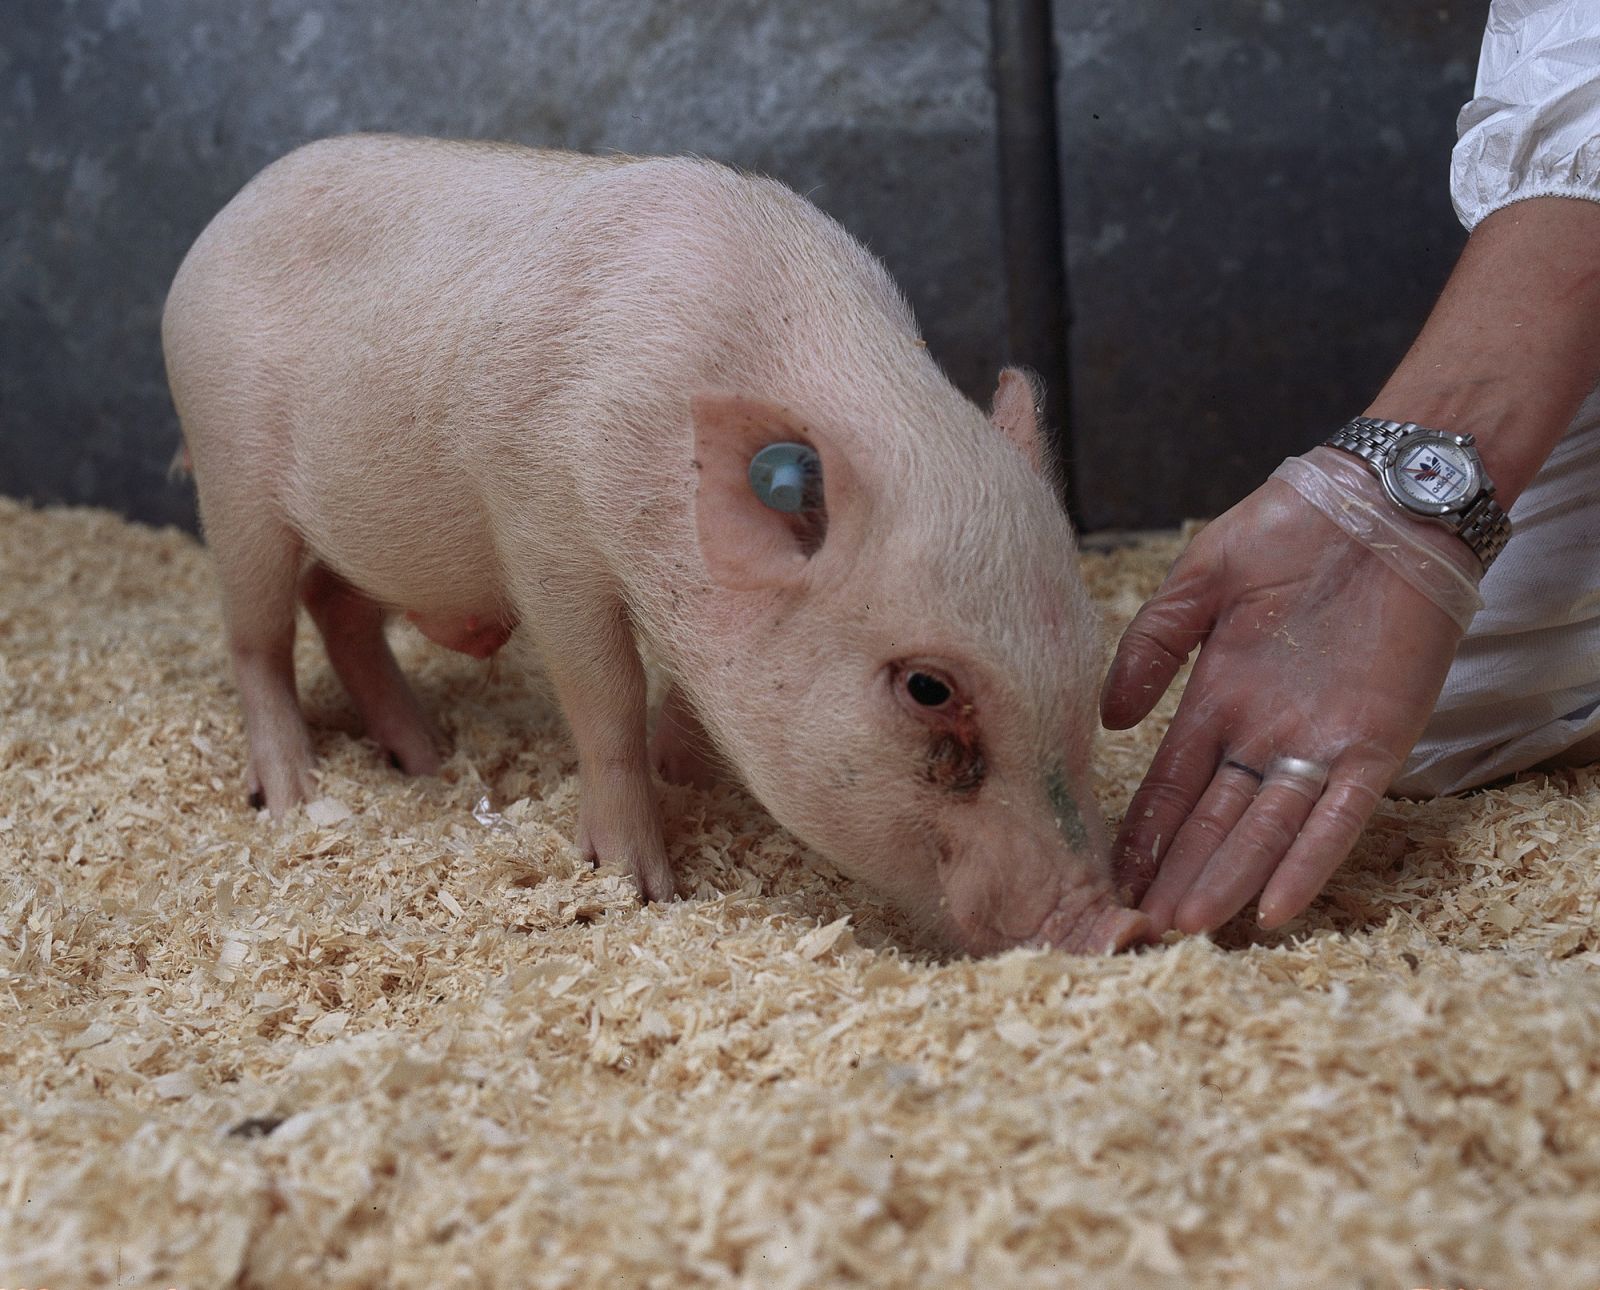 Mini-pig sniffs hand